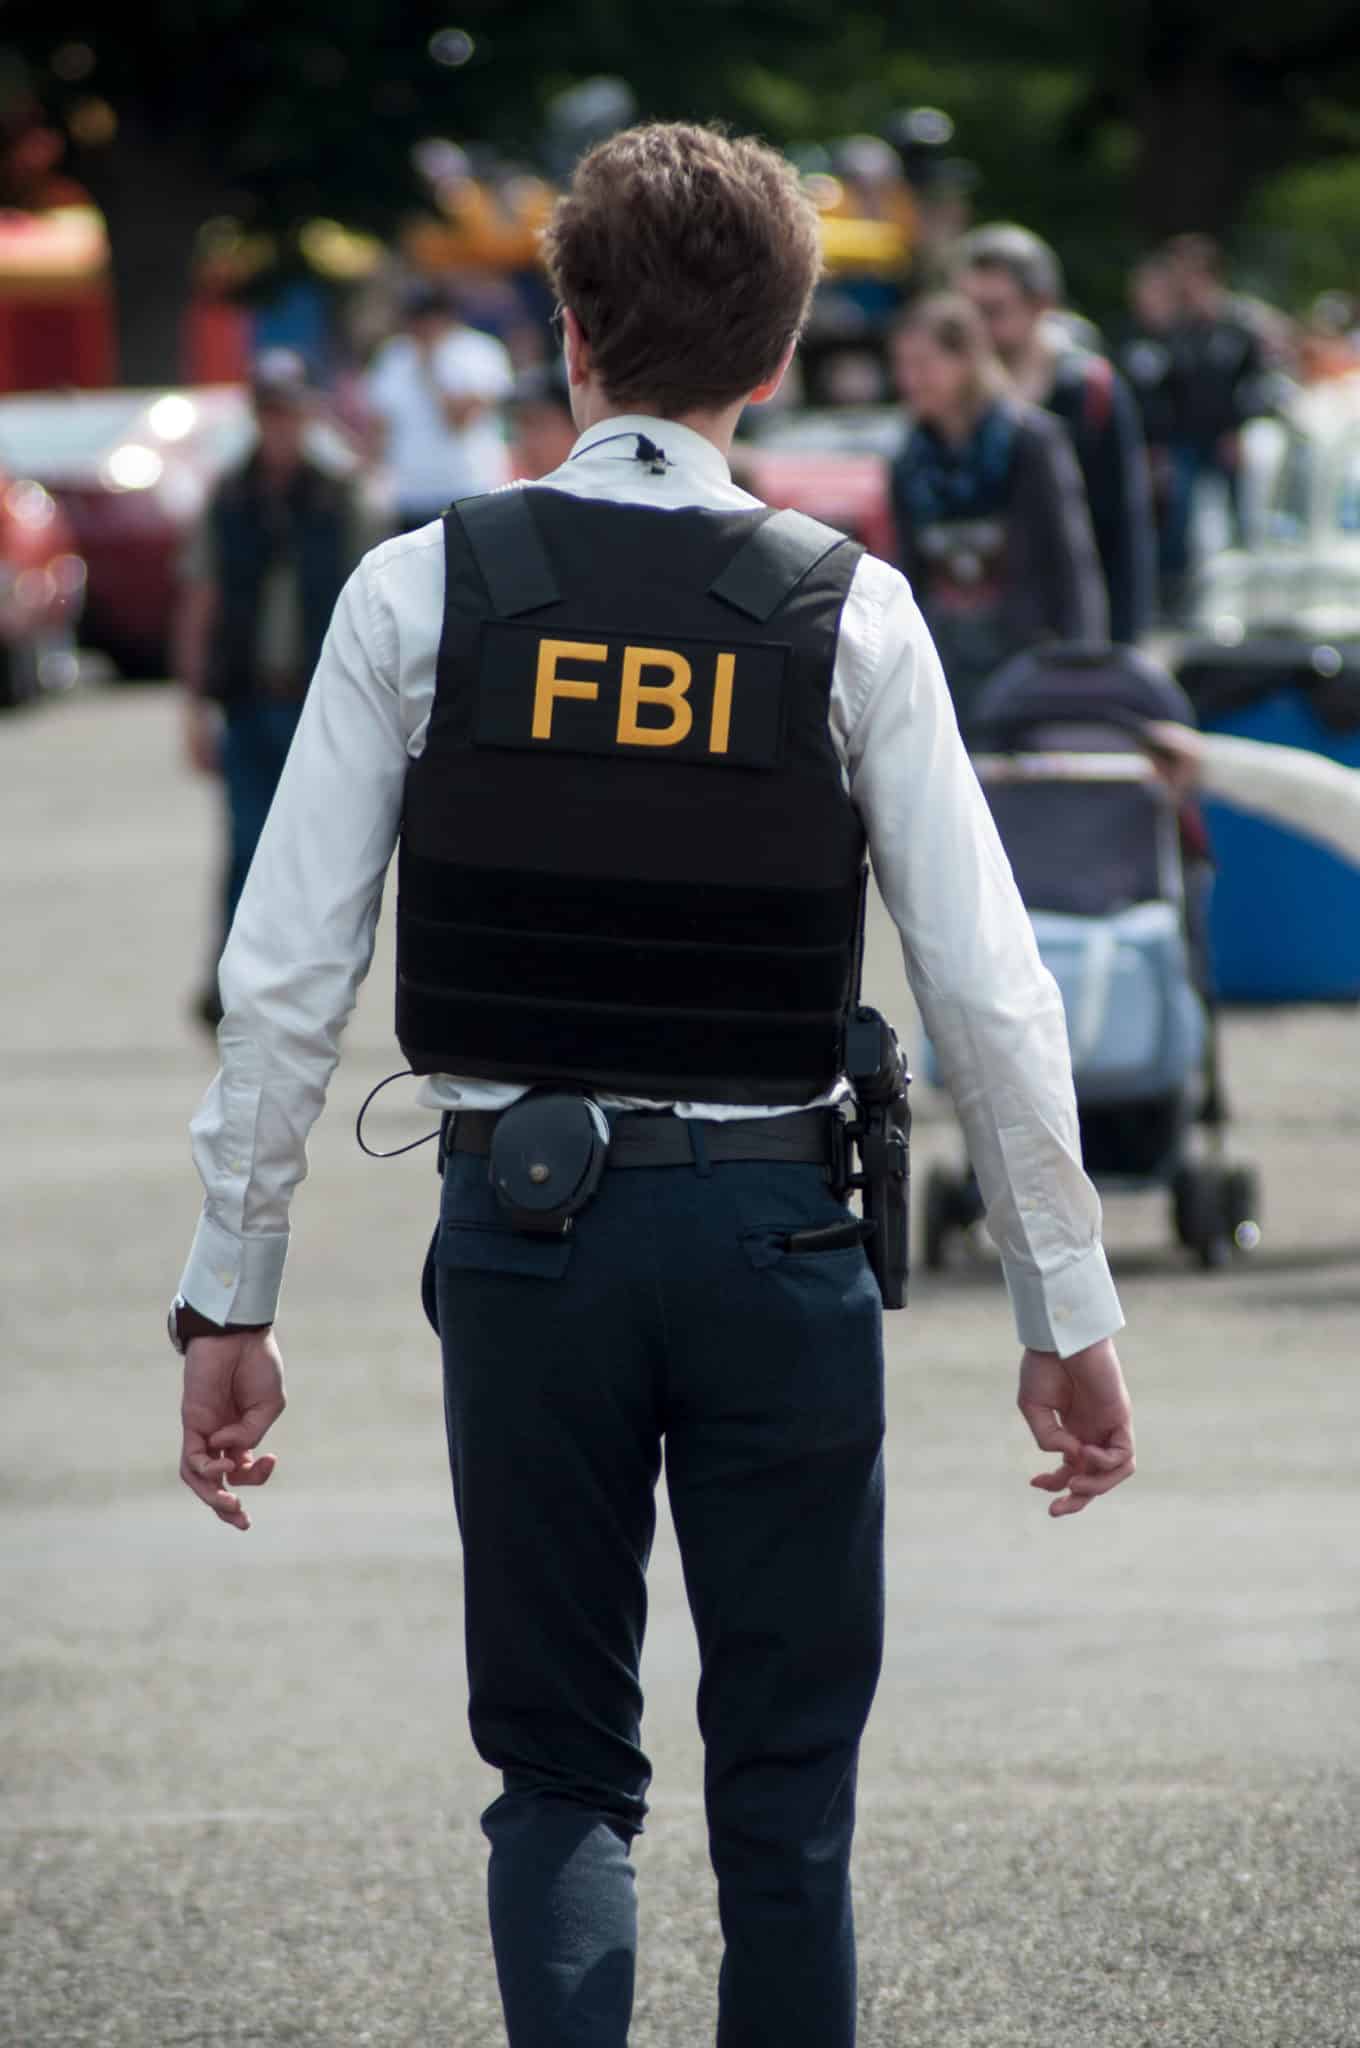 FBI agent in uniform